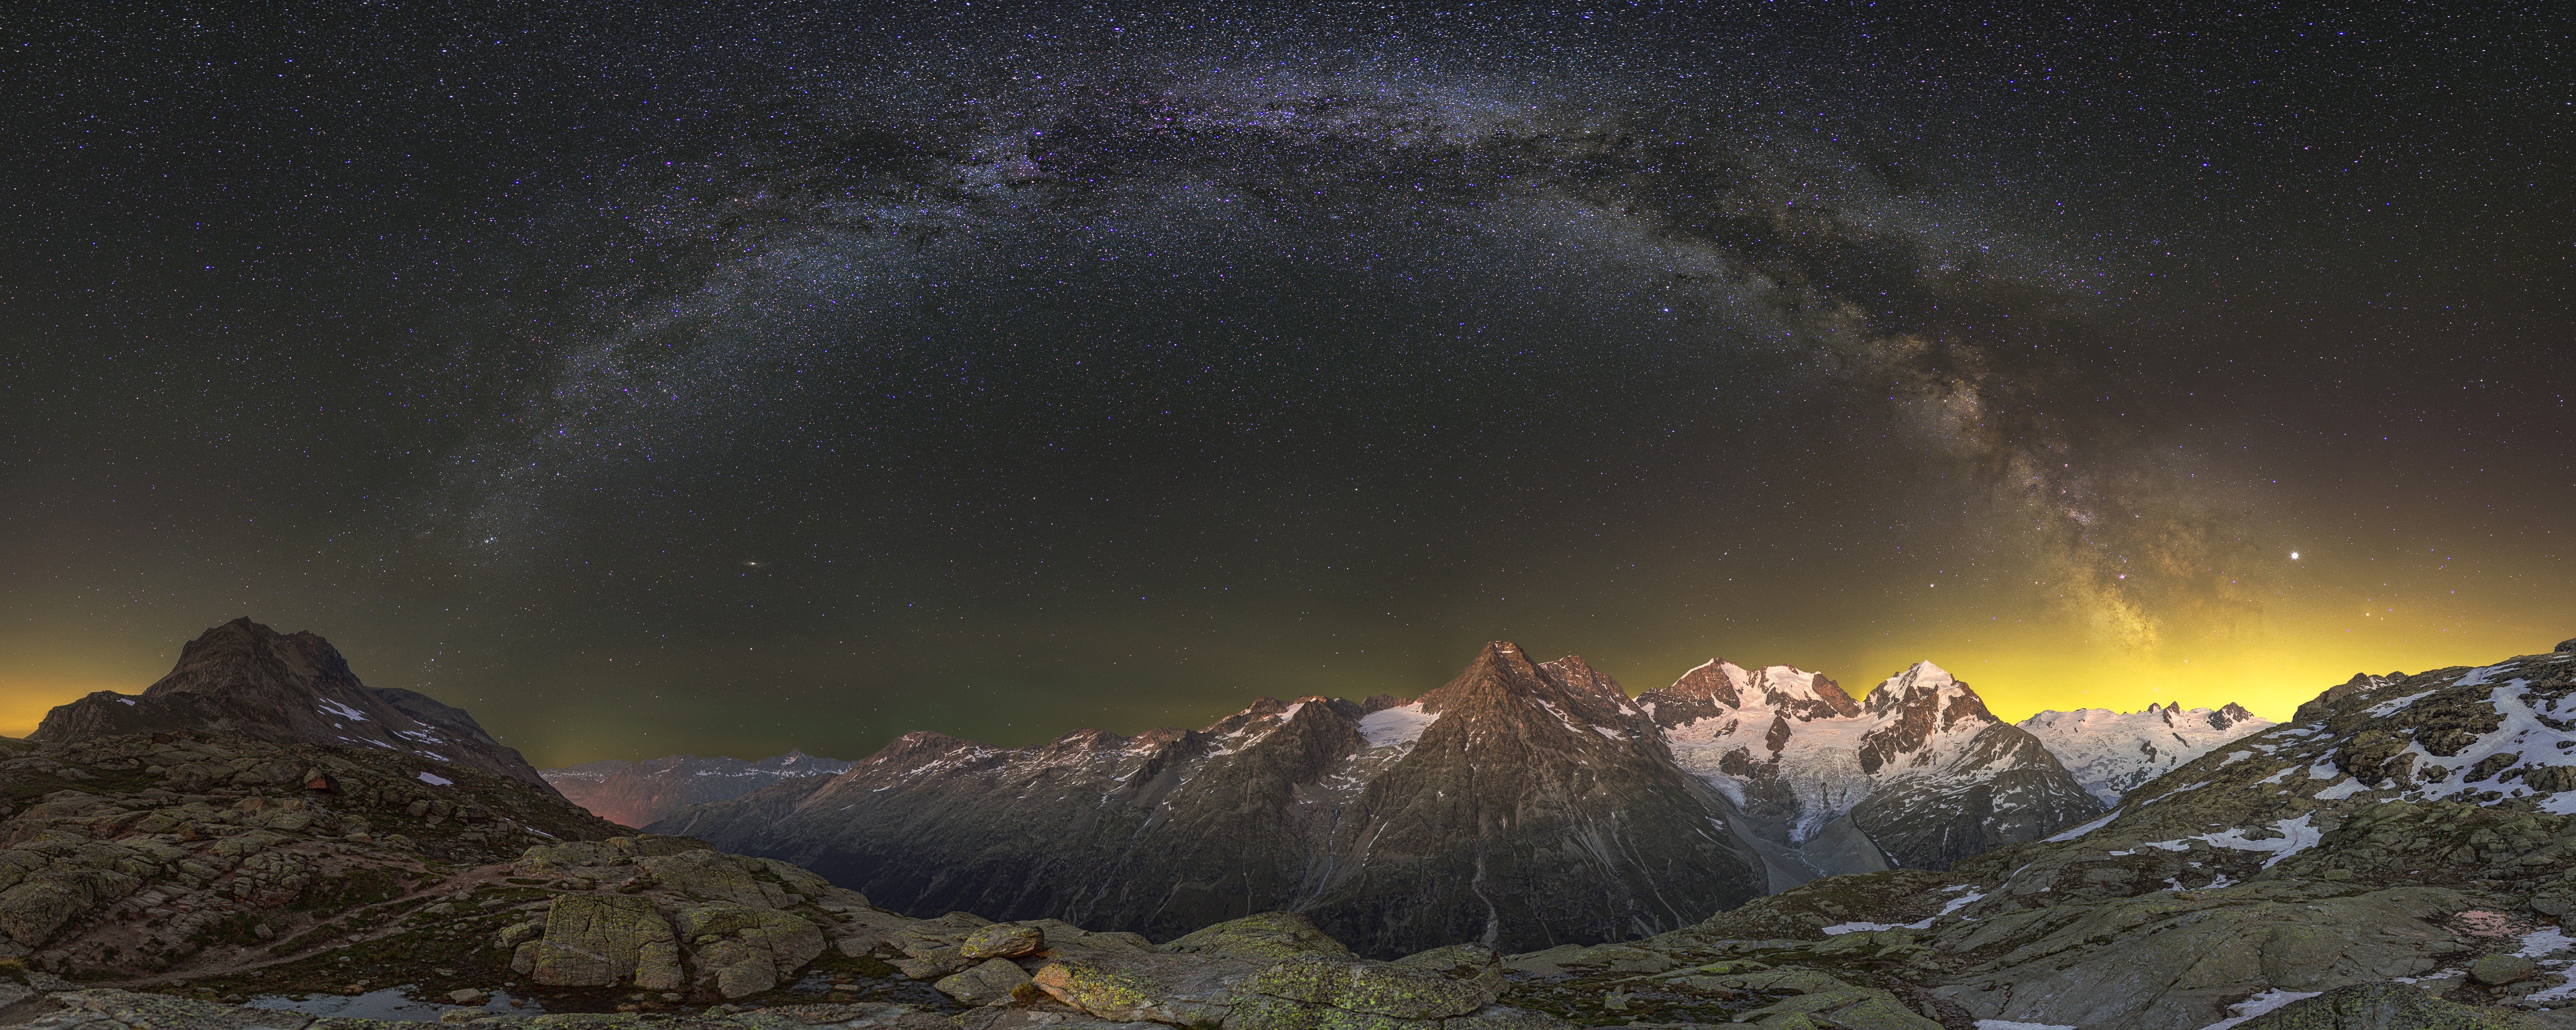 Descarga gratuita de fondo de pantalla para móvil de Naturaleza, Montañas, Noche, Montaña, Cielo Estrellado, Alpes, Panorama, Tierra/naturaleza.